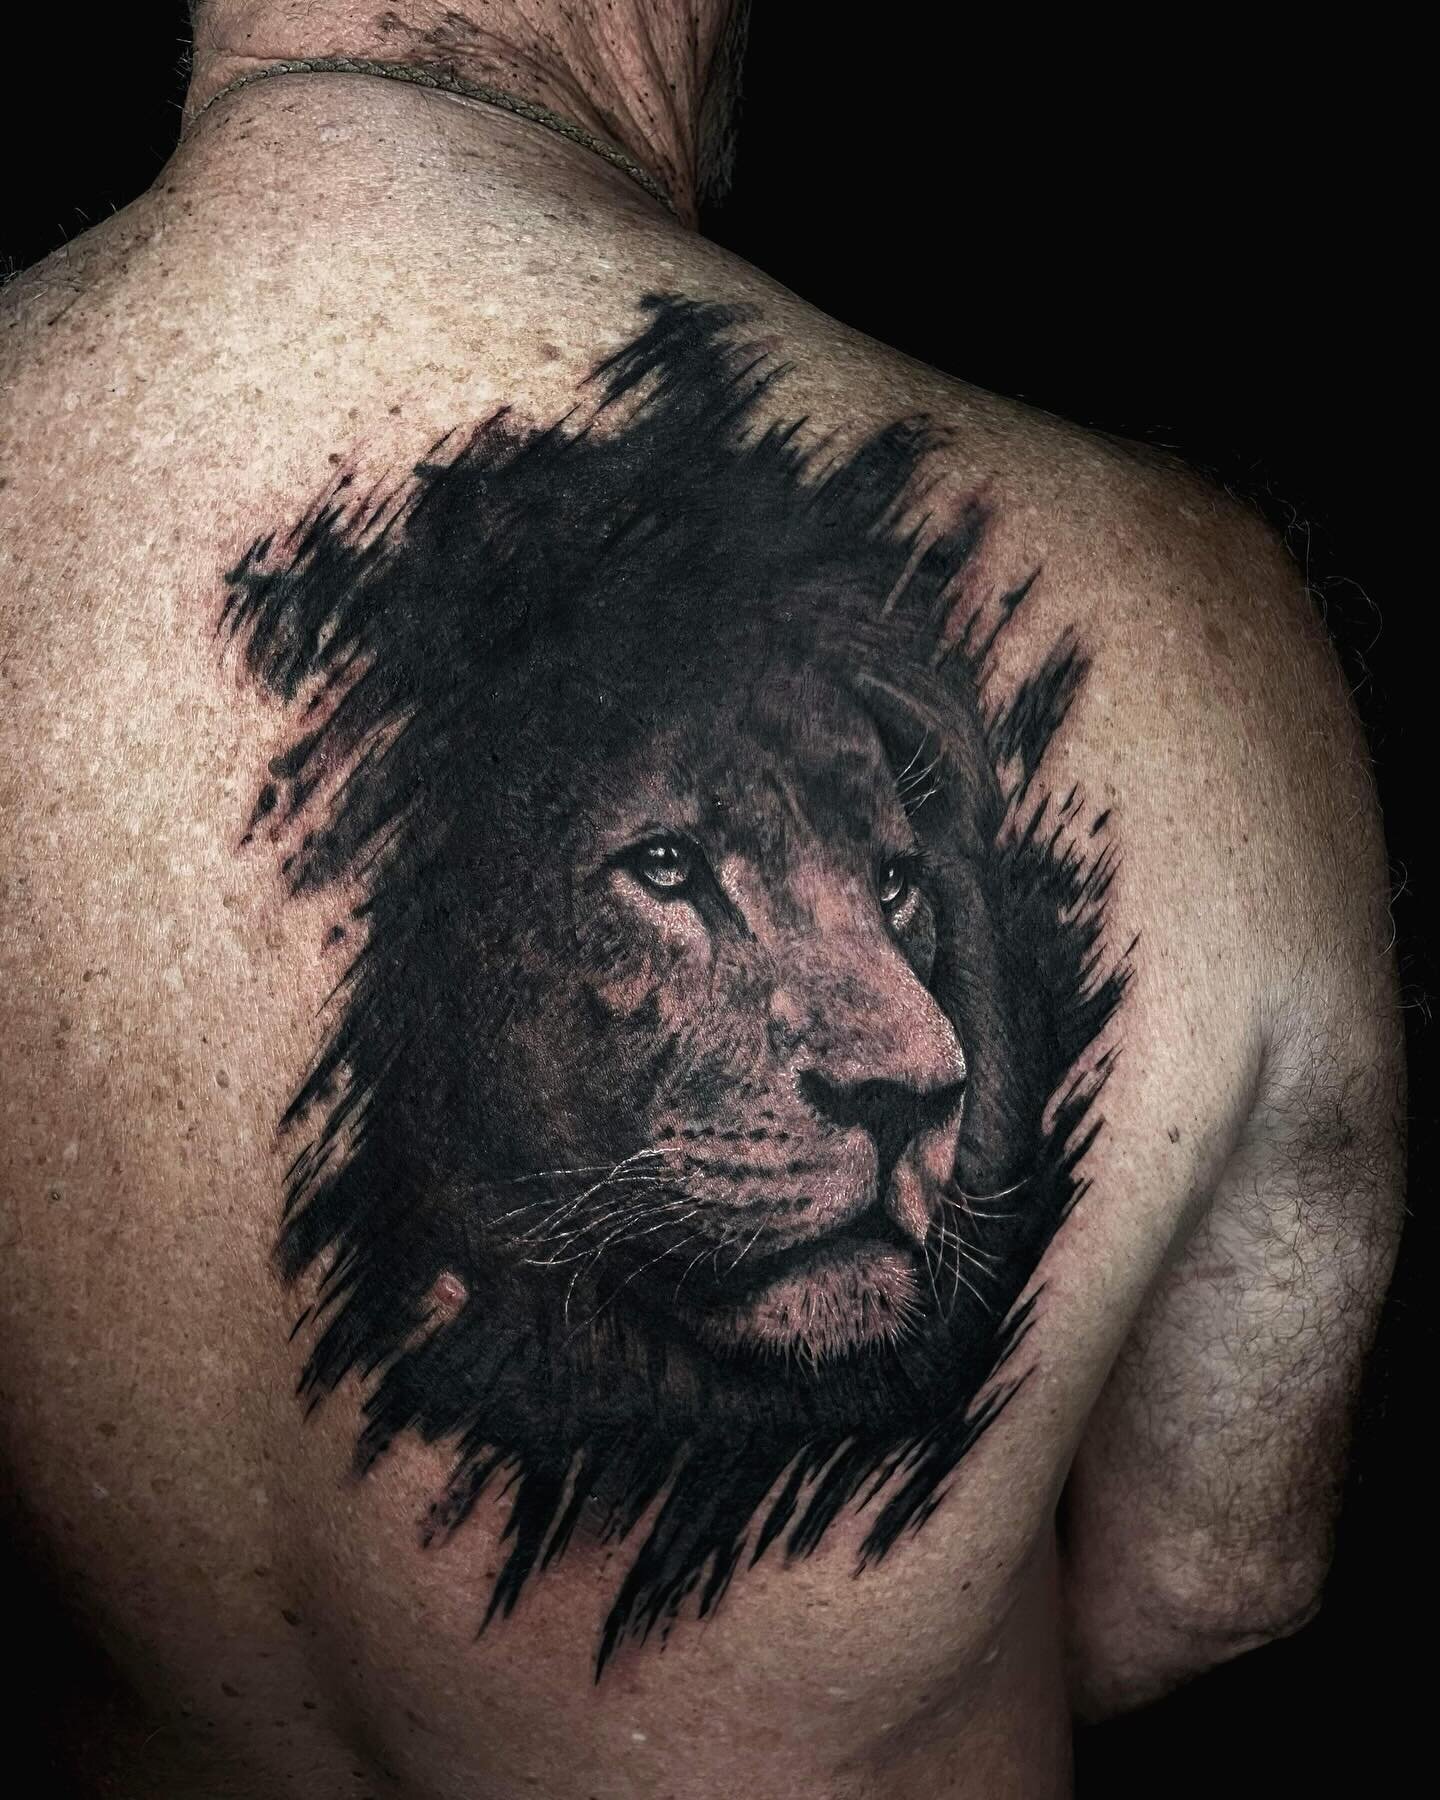 Incredible lion cover up done by Manuel 🔥 | @manuelviola.tattoos 

#squiresink #goldcoast #2024 #surfersparadise #tattoo #tattooparlor #tattoostudio #ink #inked @pirattattoo #pirattattoomachine #tattooartist #inkart #inkdrawing #skills #tattooideas 